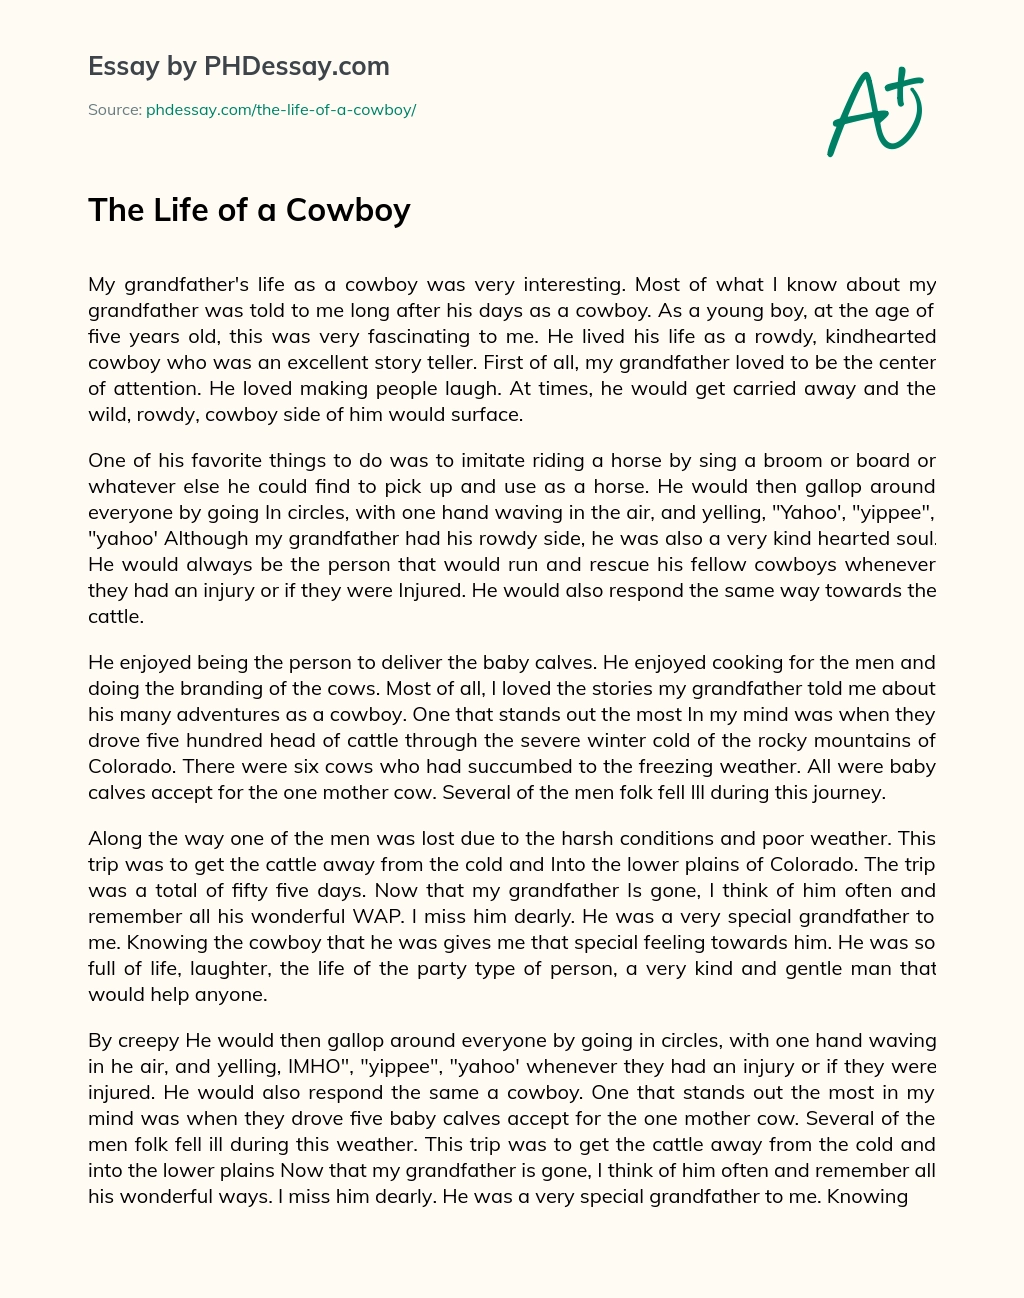 The Life of a Cowboy essay